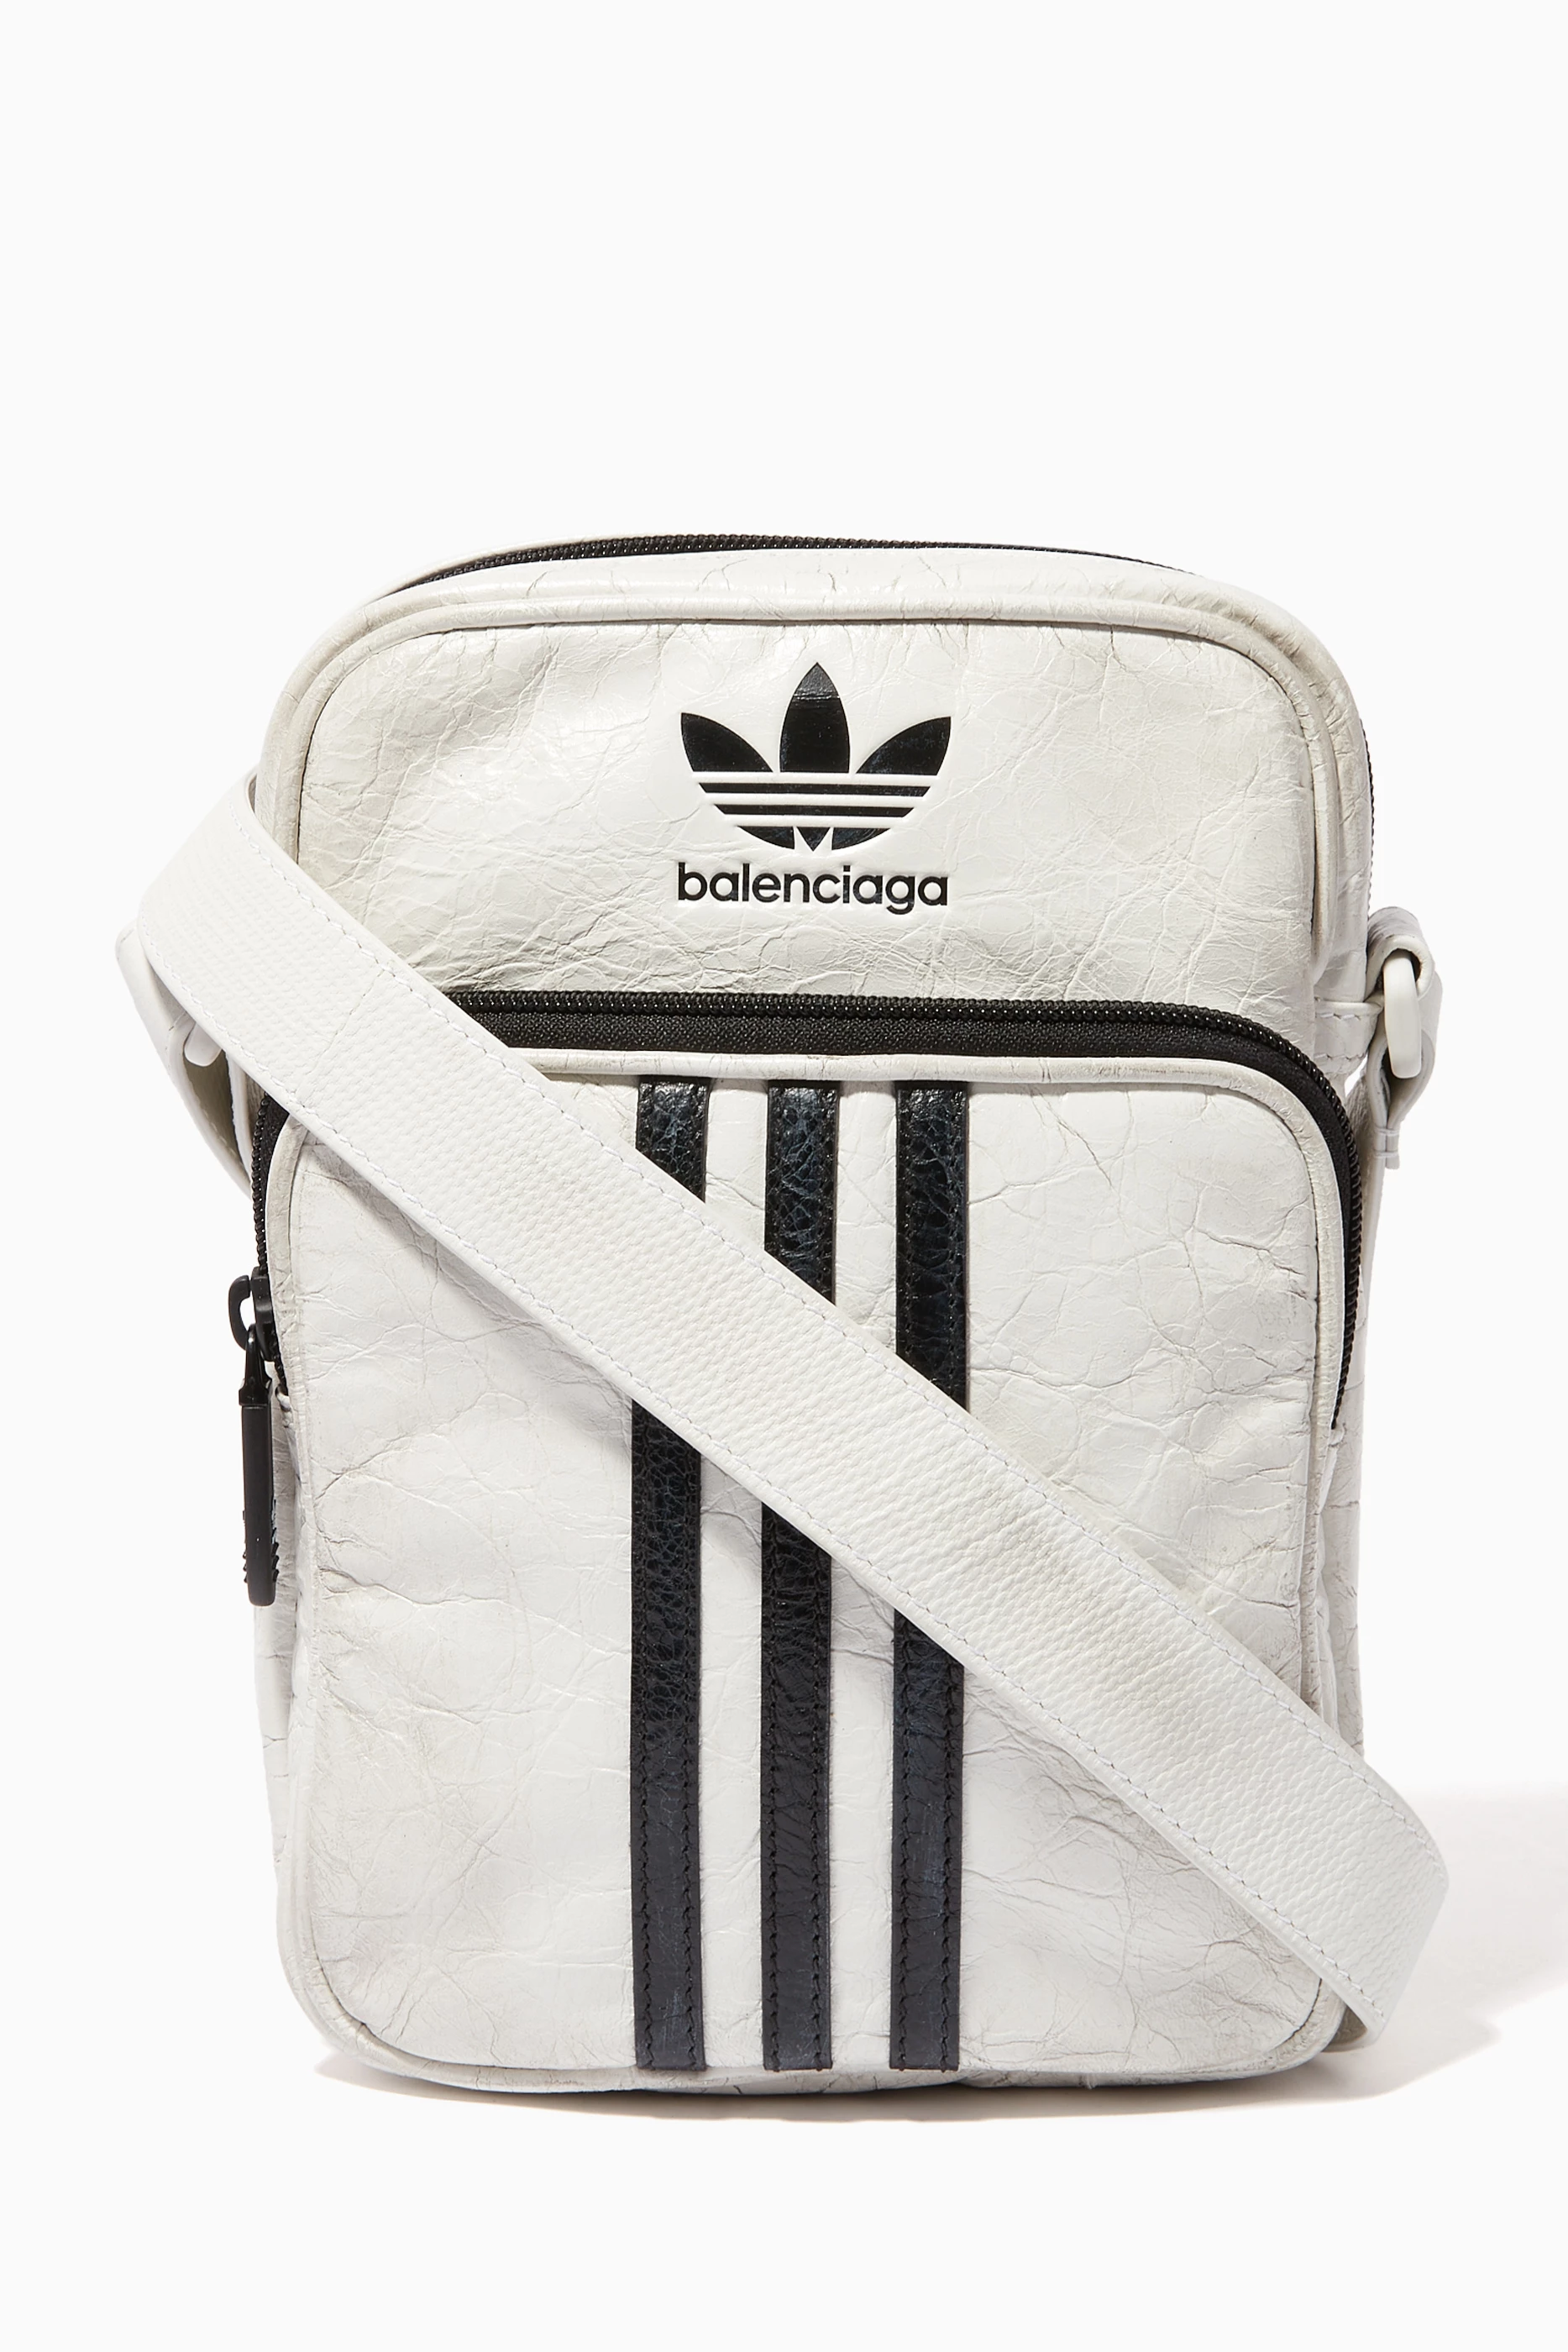 Balenciaga X Adidas Crossbody Messenger Bag in White for Men